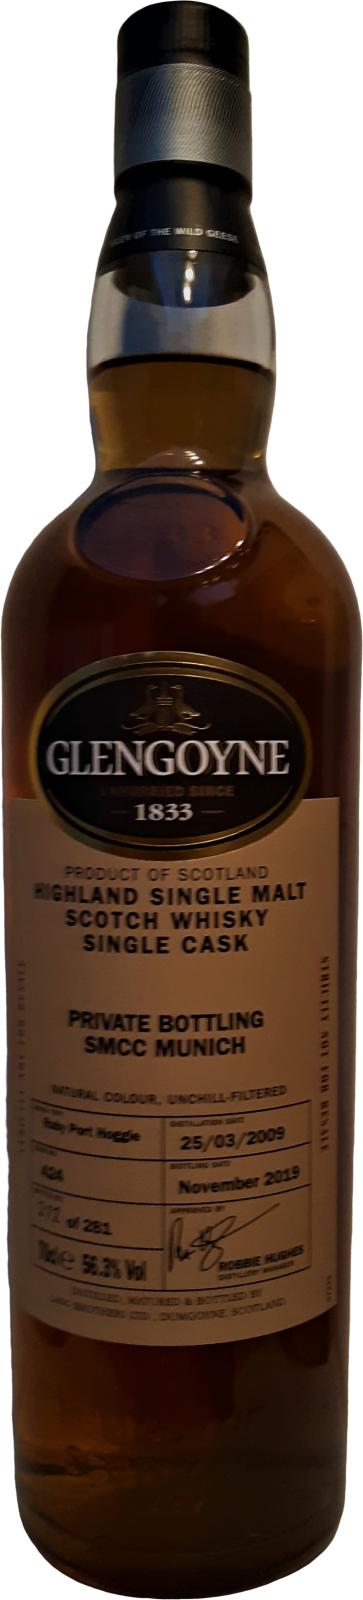 Glengoyne 2009 Private Bottling Ruby Port Hoggie #424 Single Malt Connoisseurs Club Munich 56.3% 700ml